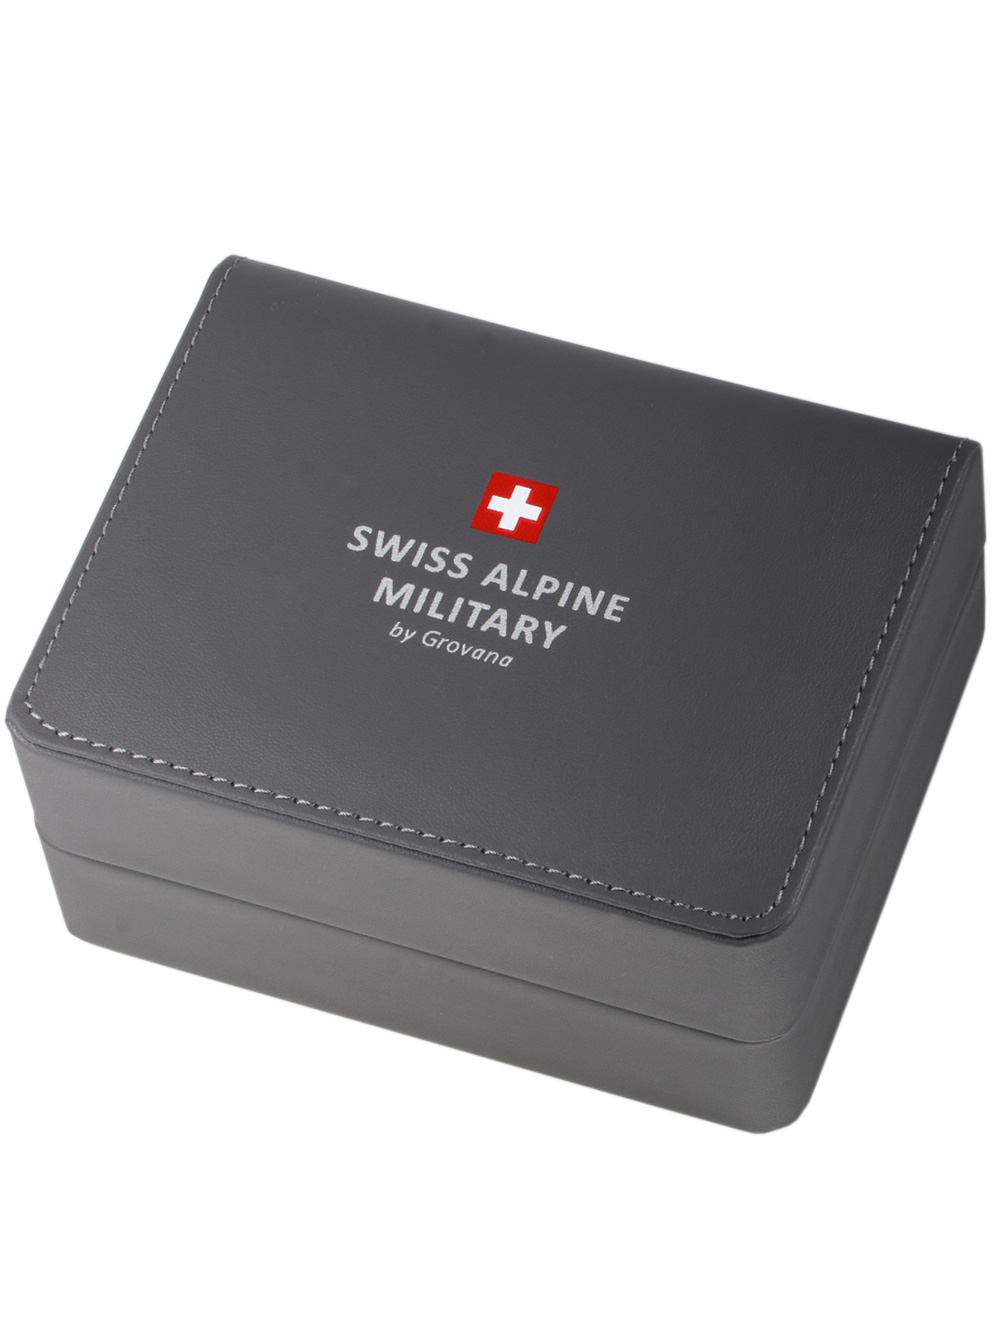 Zegarek męski Swiss Alpine Military 7095.2132